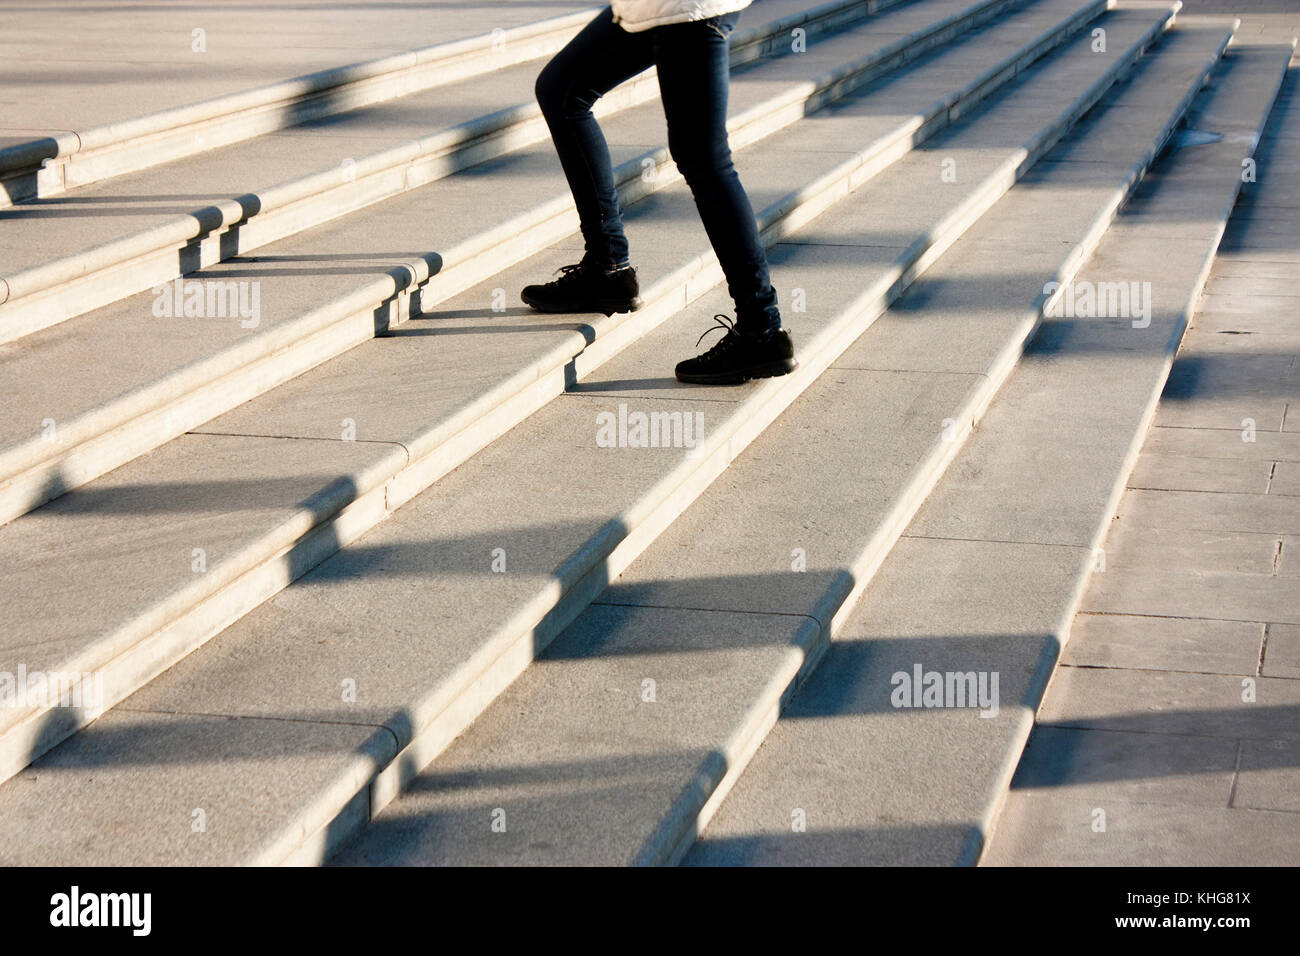 Una ragazza adolescente salendo le scale in motion blur e le ombre delle persone seguenti , sul pubblico enorme scalinata esterna Foto Stock